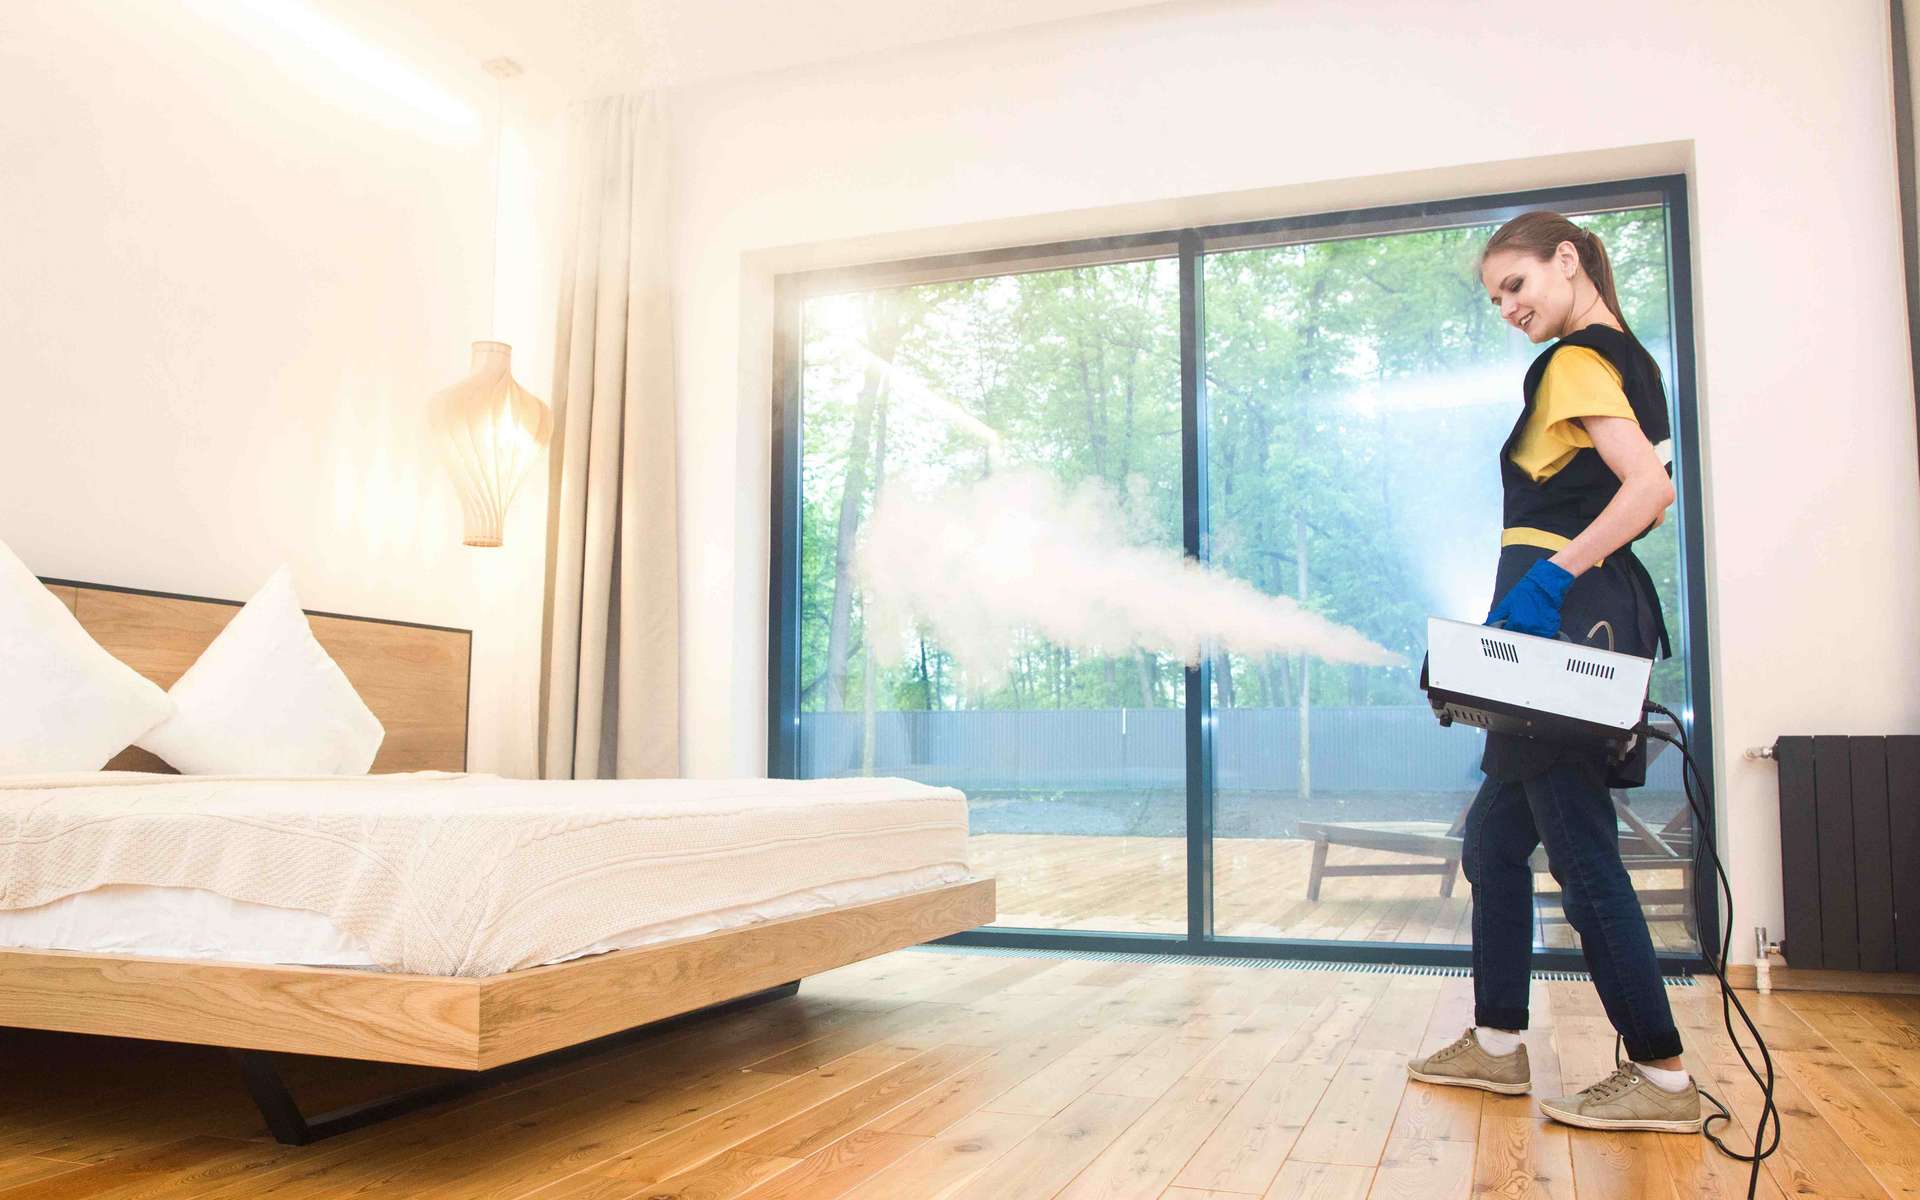 Pourquoi il ne faut pas utiliser d'insecticides contre les punaises de lit  - AlloDocteurs